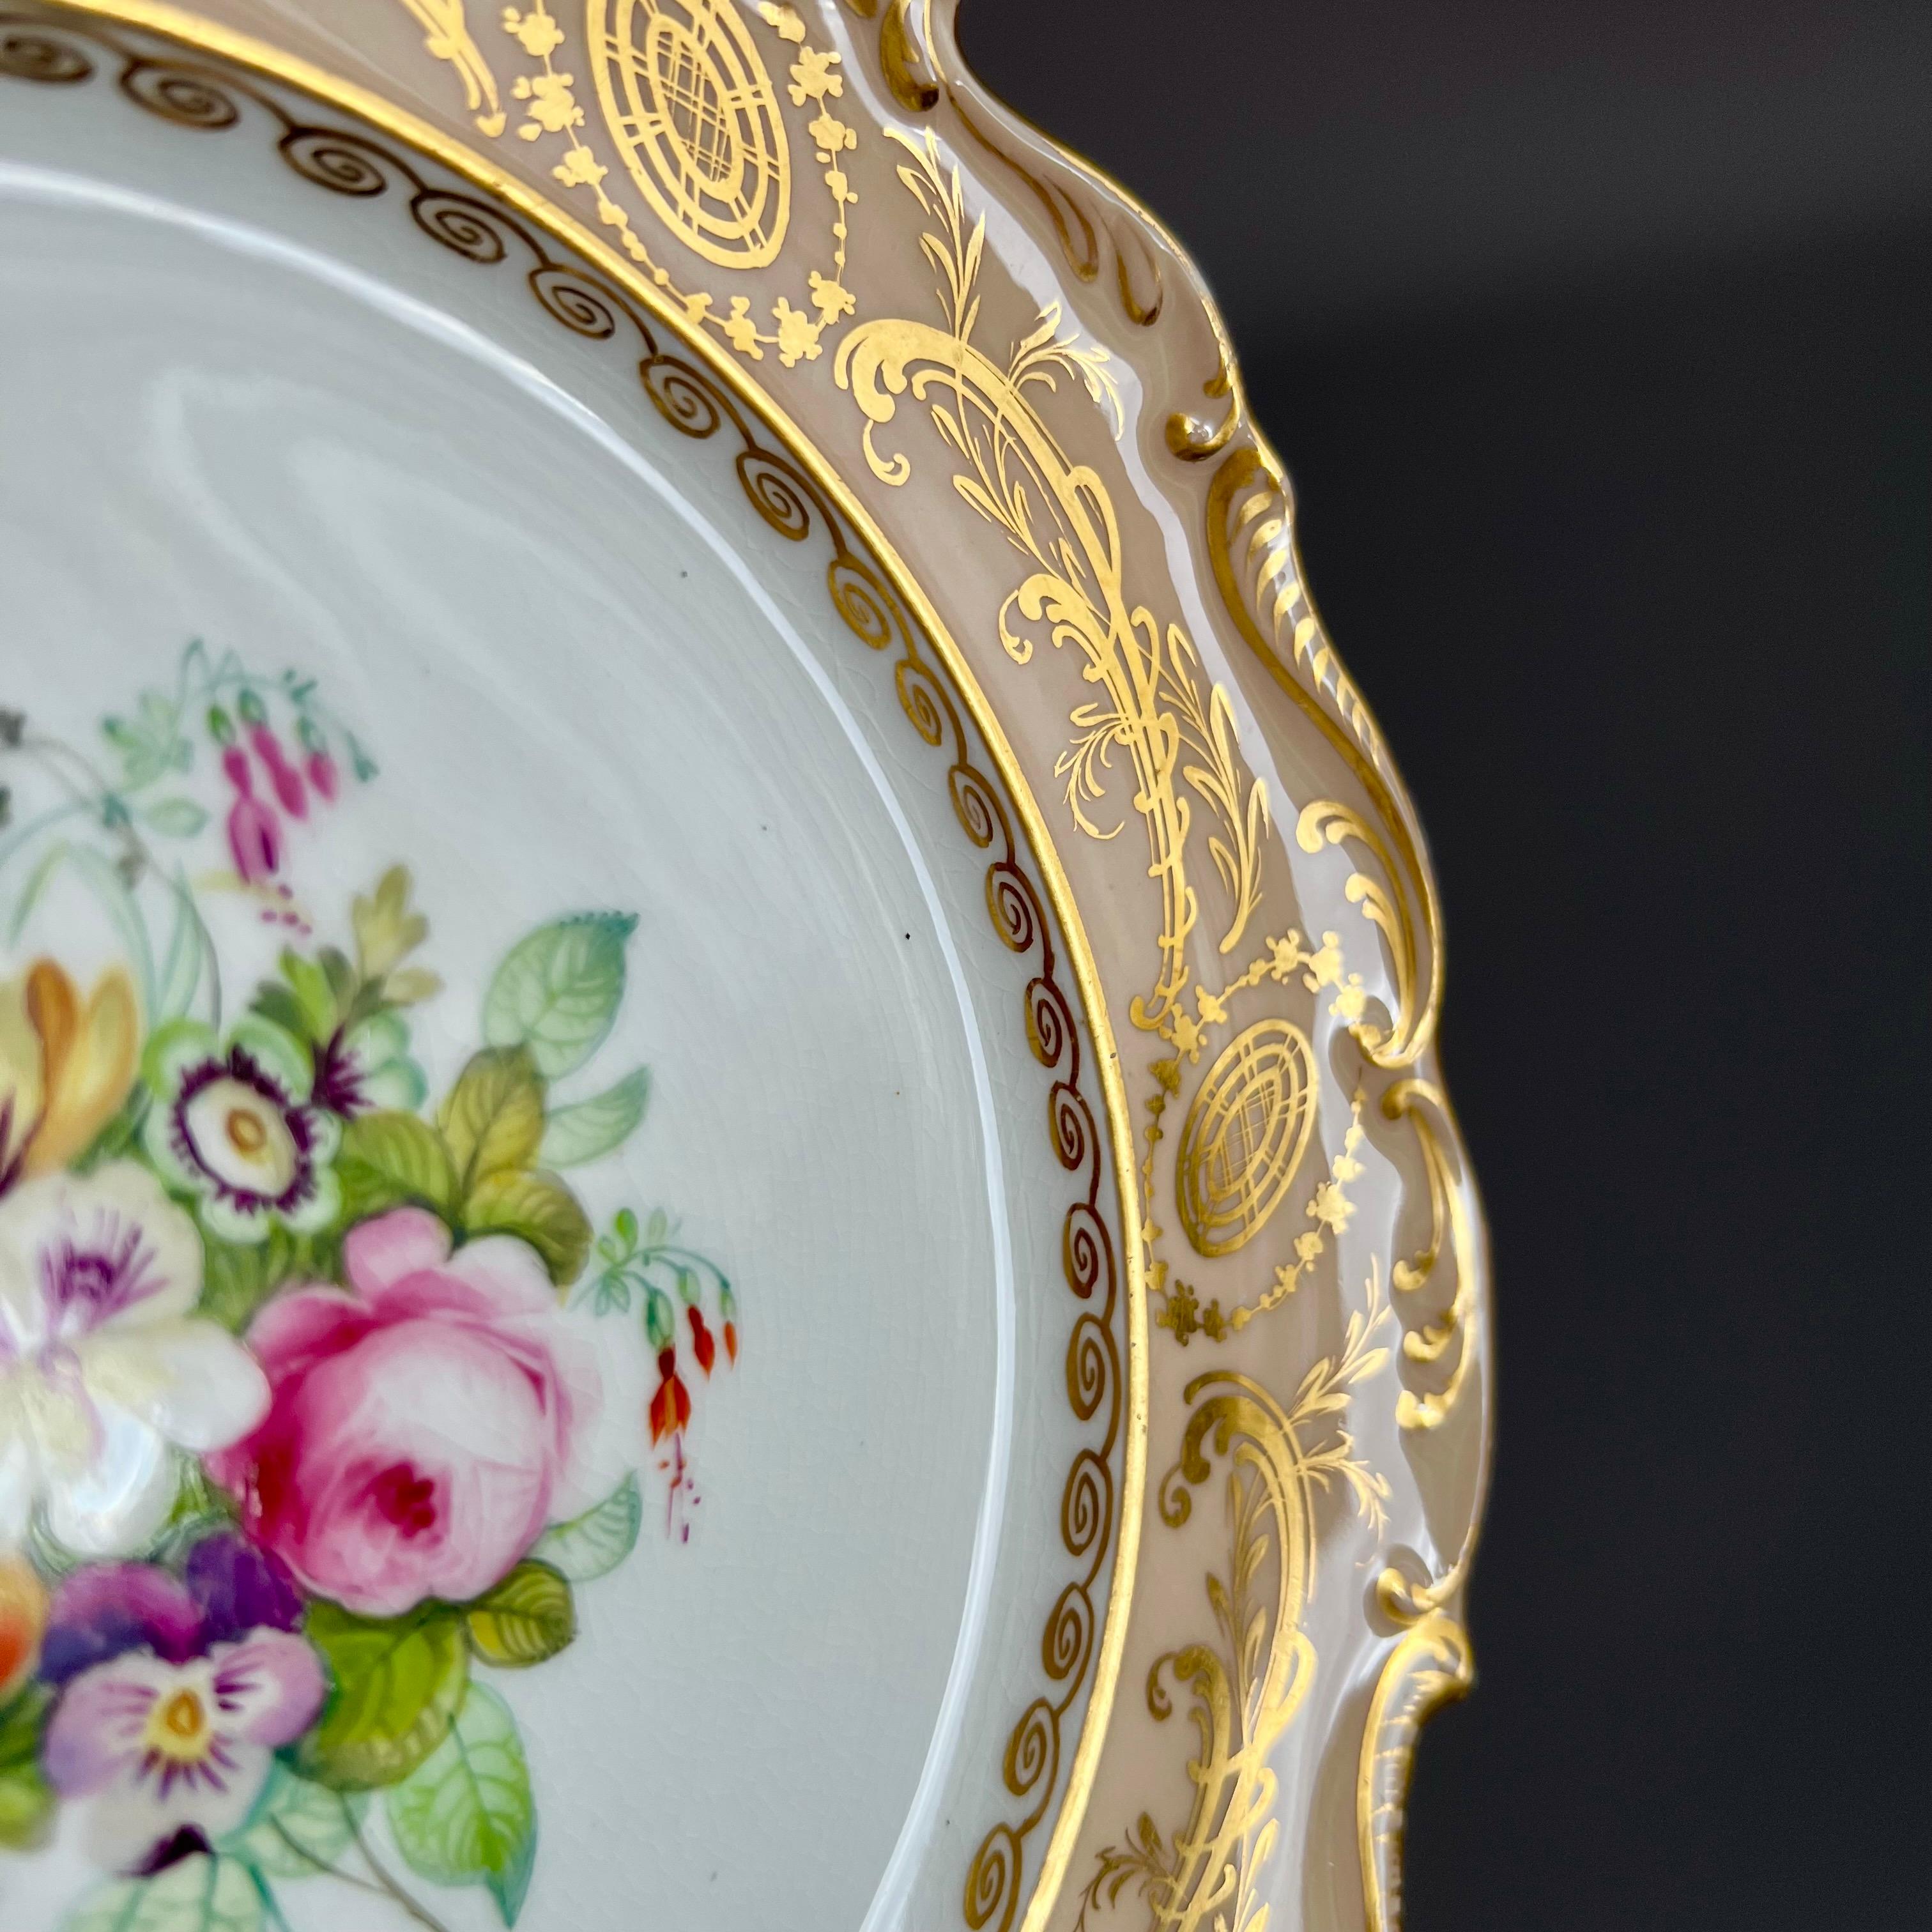 Regency Coalport Porcelain Plate, Salmon Colour, Flowers by Thomas Dixon, ca 1840